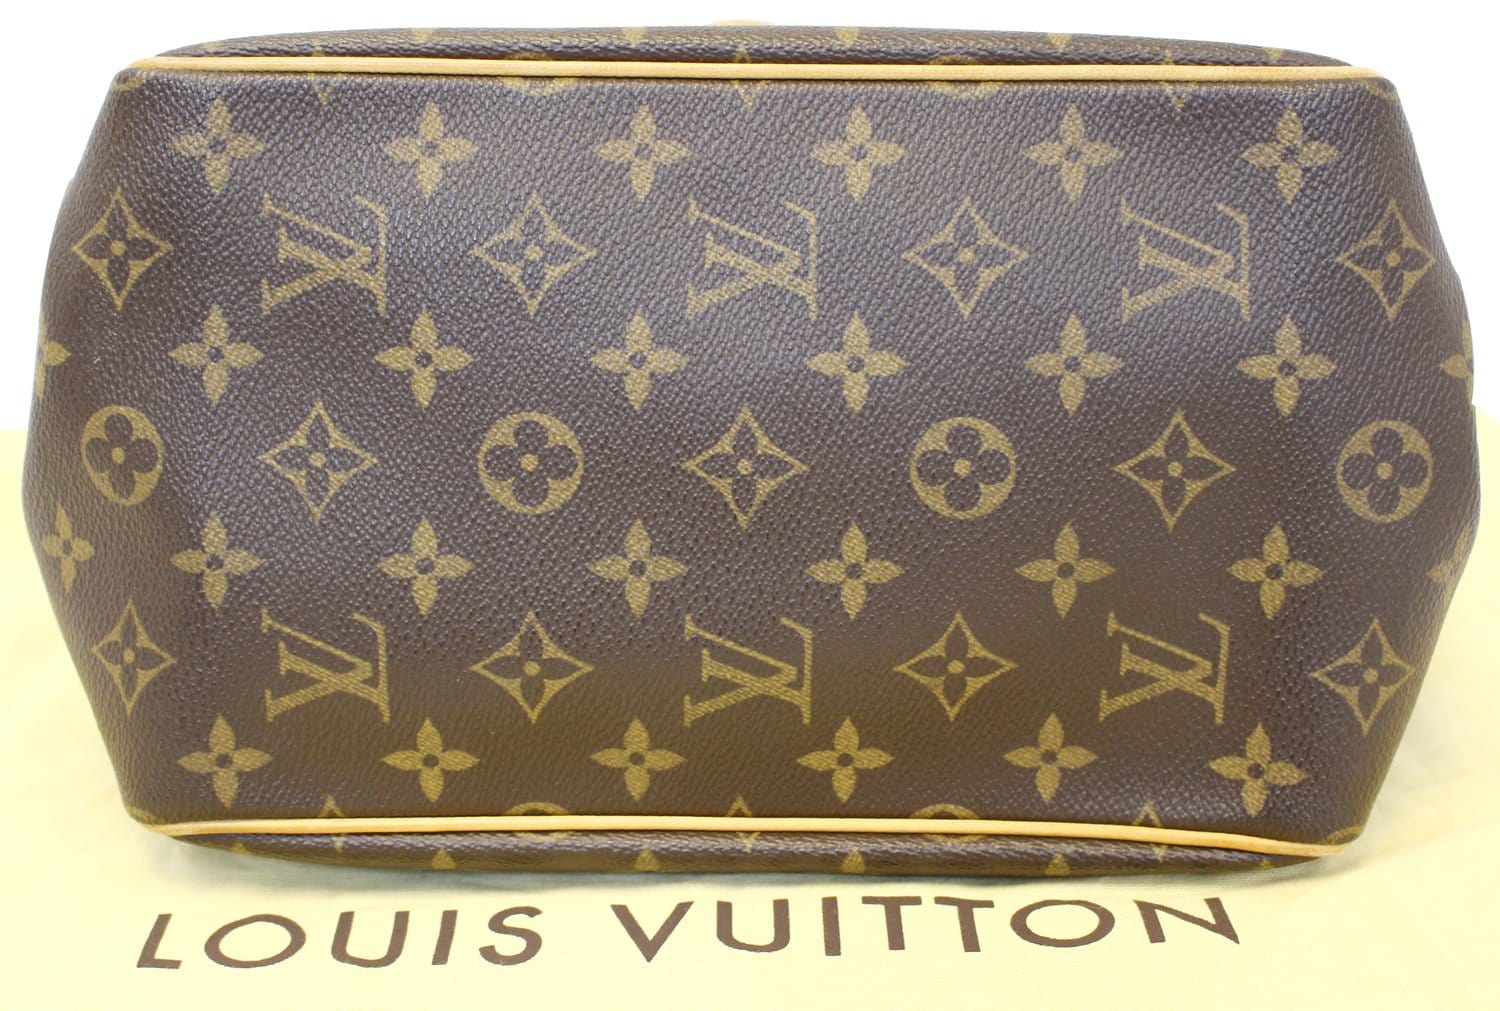 Louis Vuitton Batignolles Vertical Monogram Canvas Leather Tote